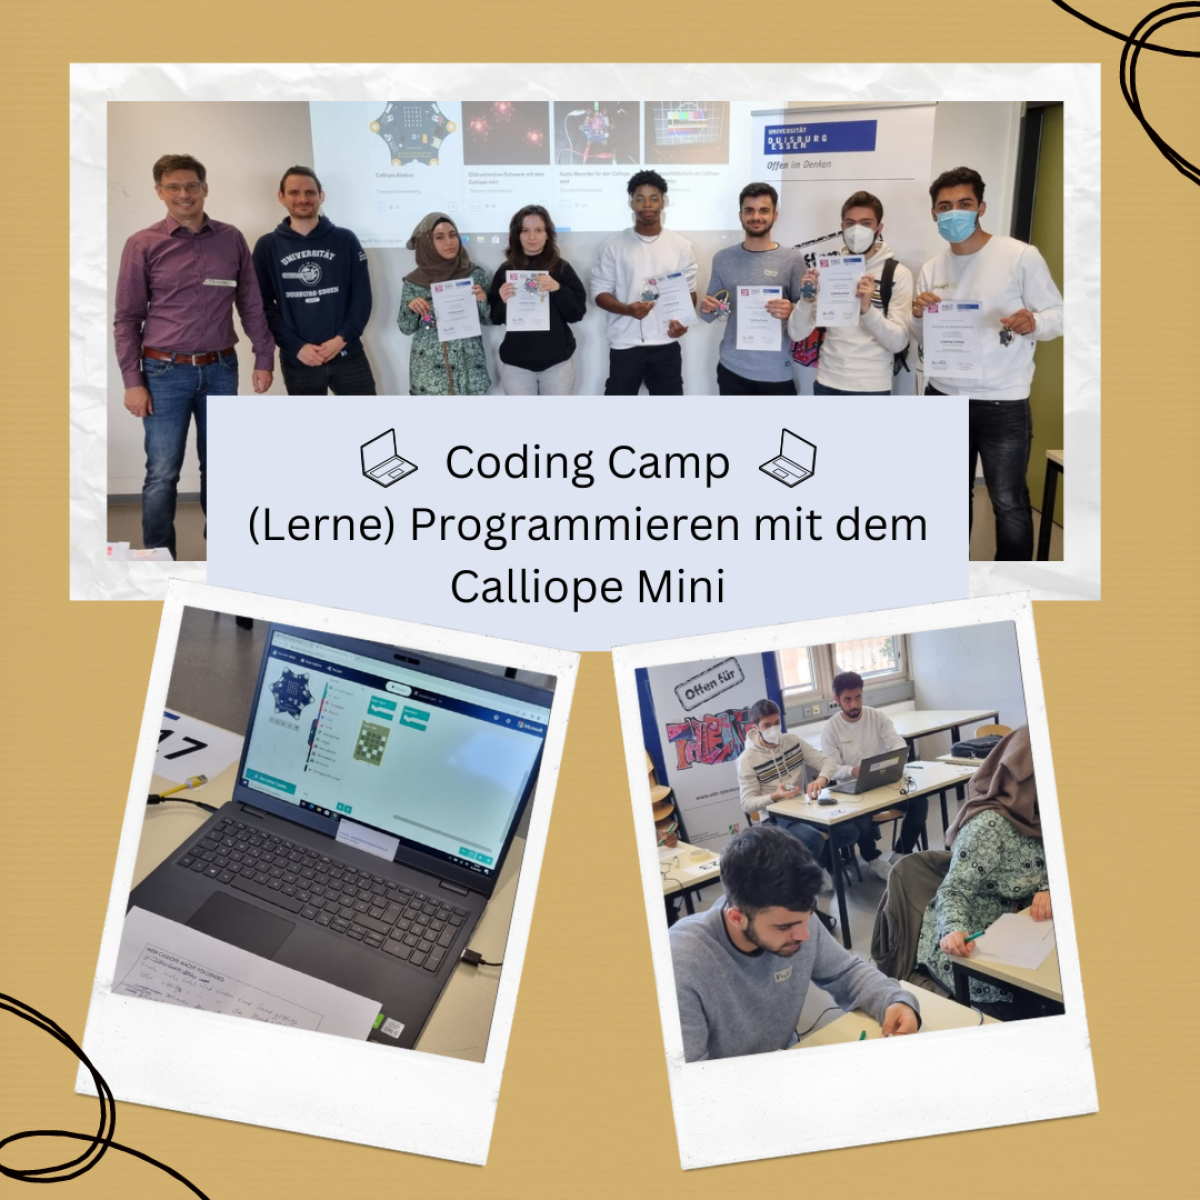 Die Teilnehmer*innen des Coding Camps zeigen ihr Zertifikat.